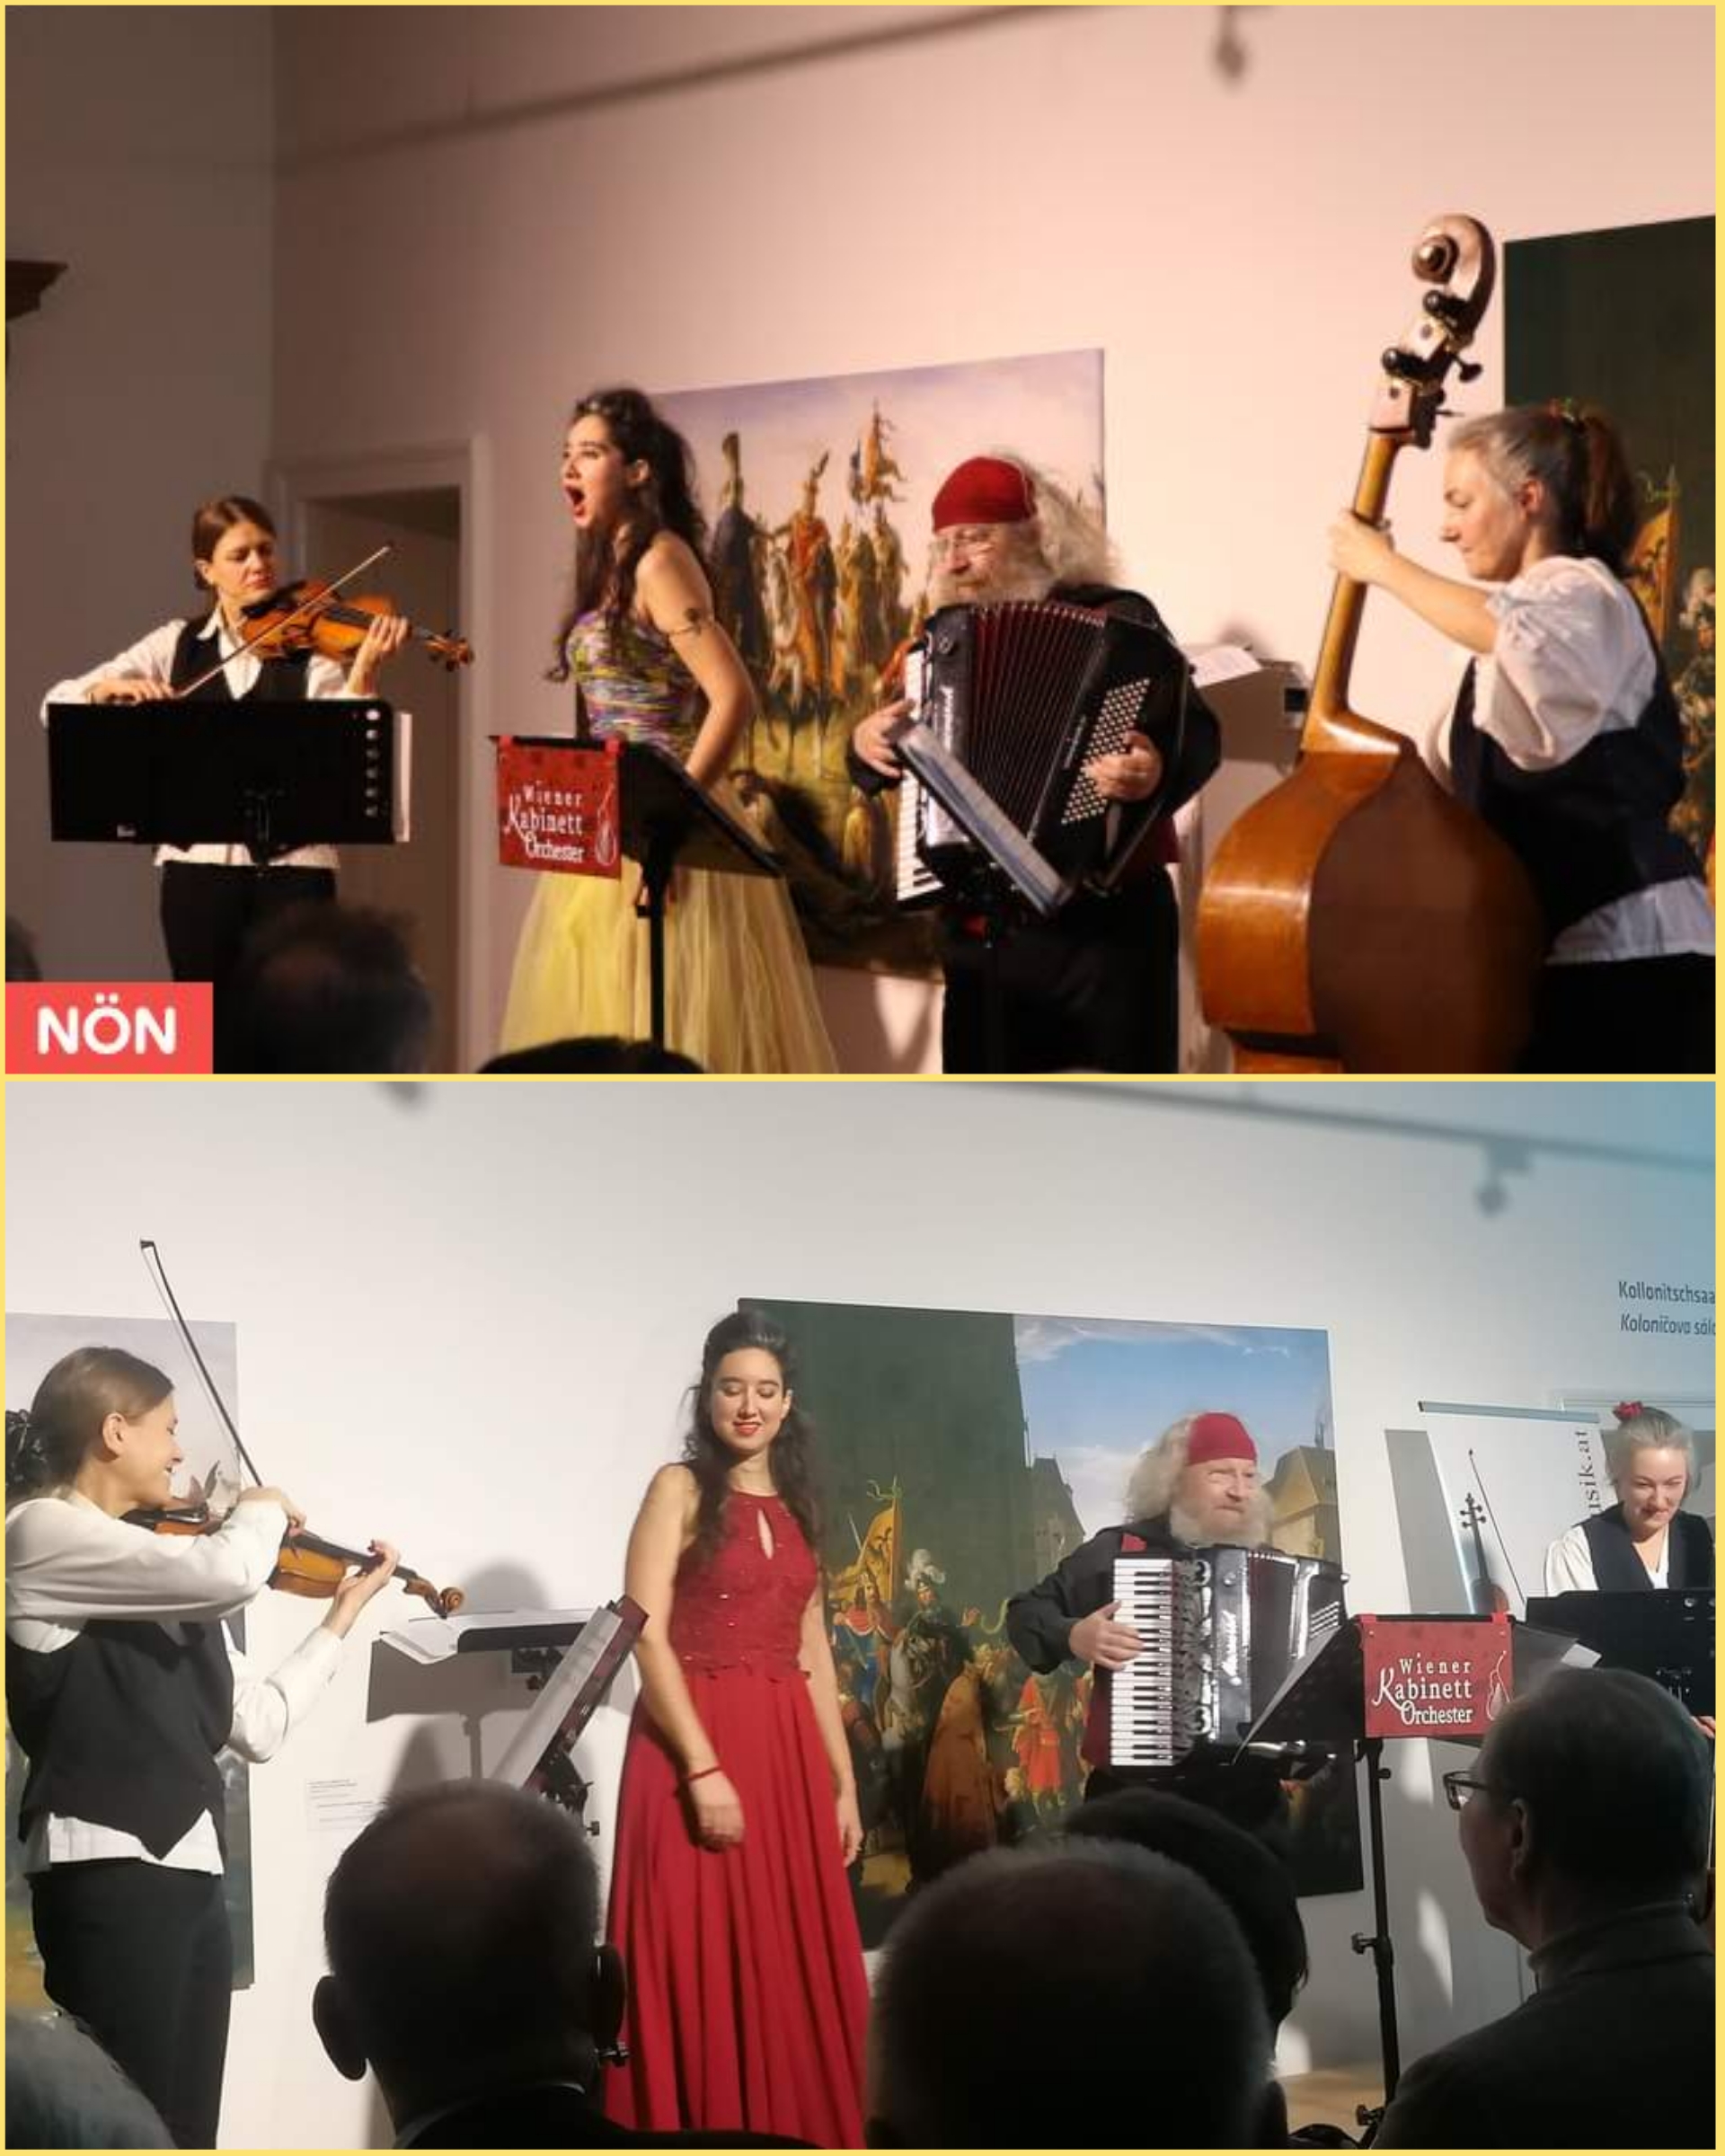 Das kleinste Neujahrskonzert mit dem Wiener Kabinett Orchester auf Schloss Jedenspeigen